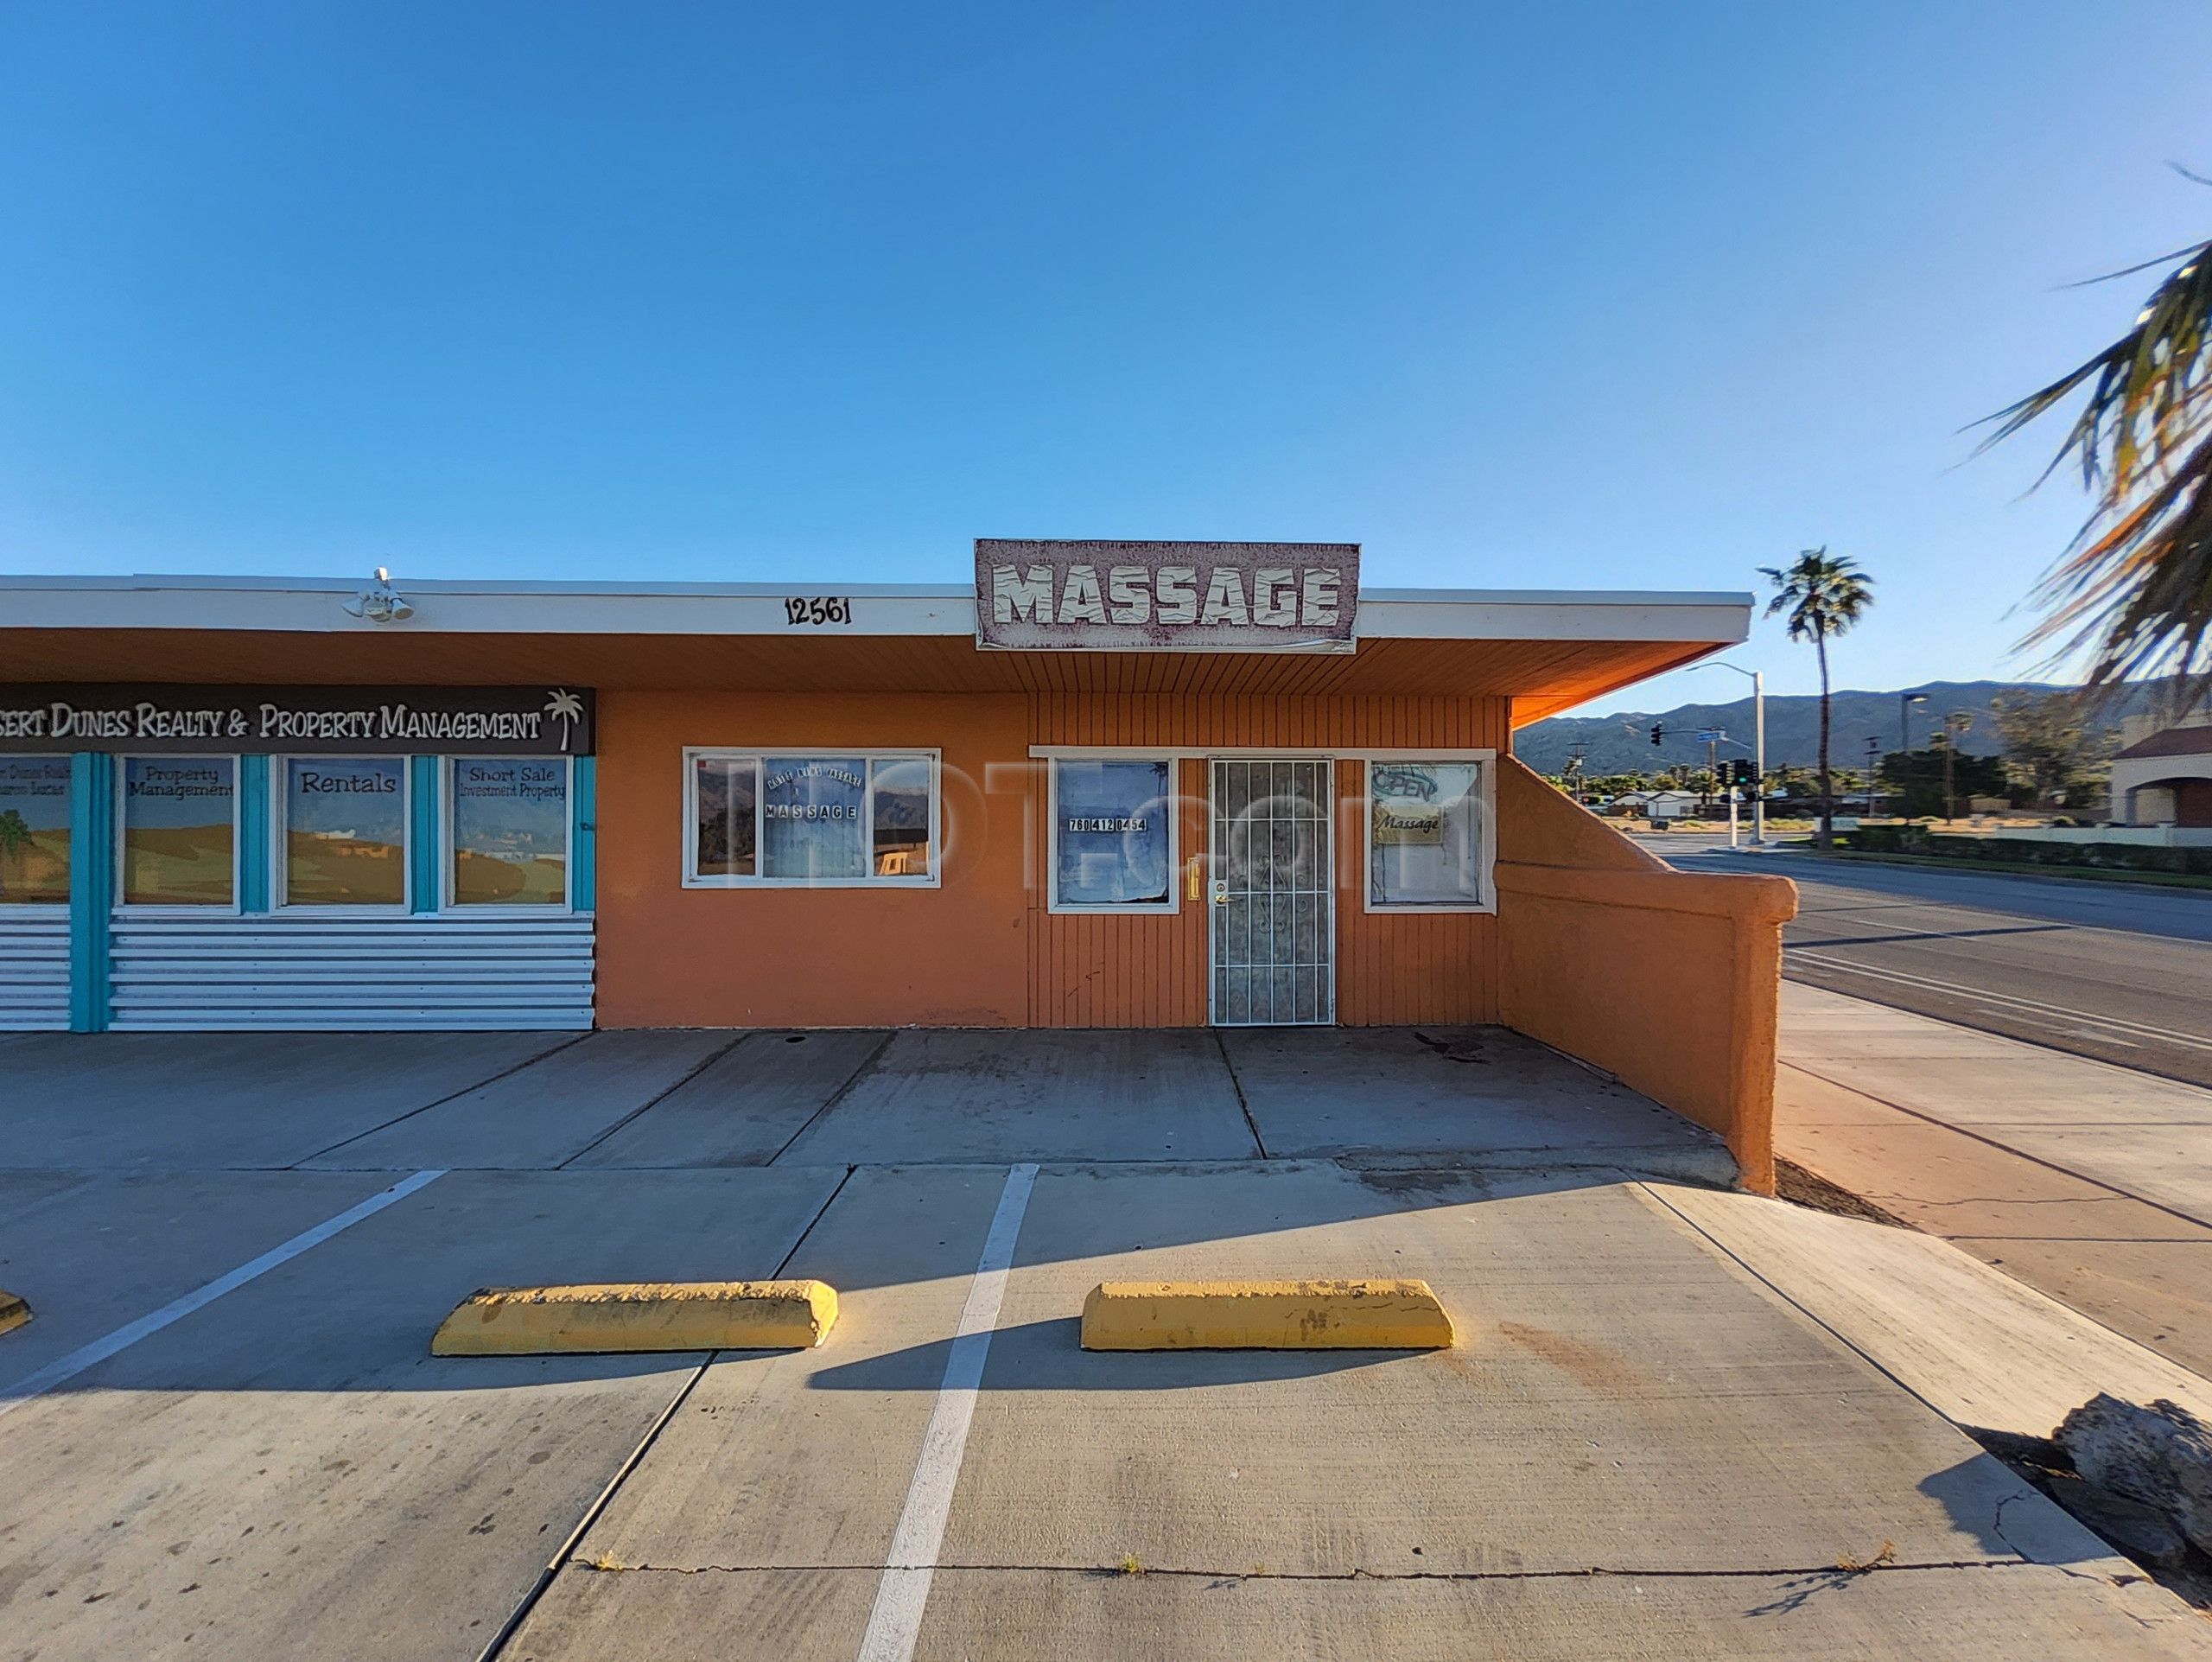 Desert Hot Springs, California Hot Springs Massage